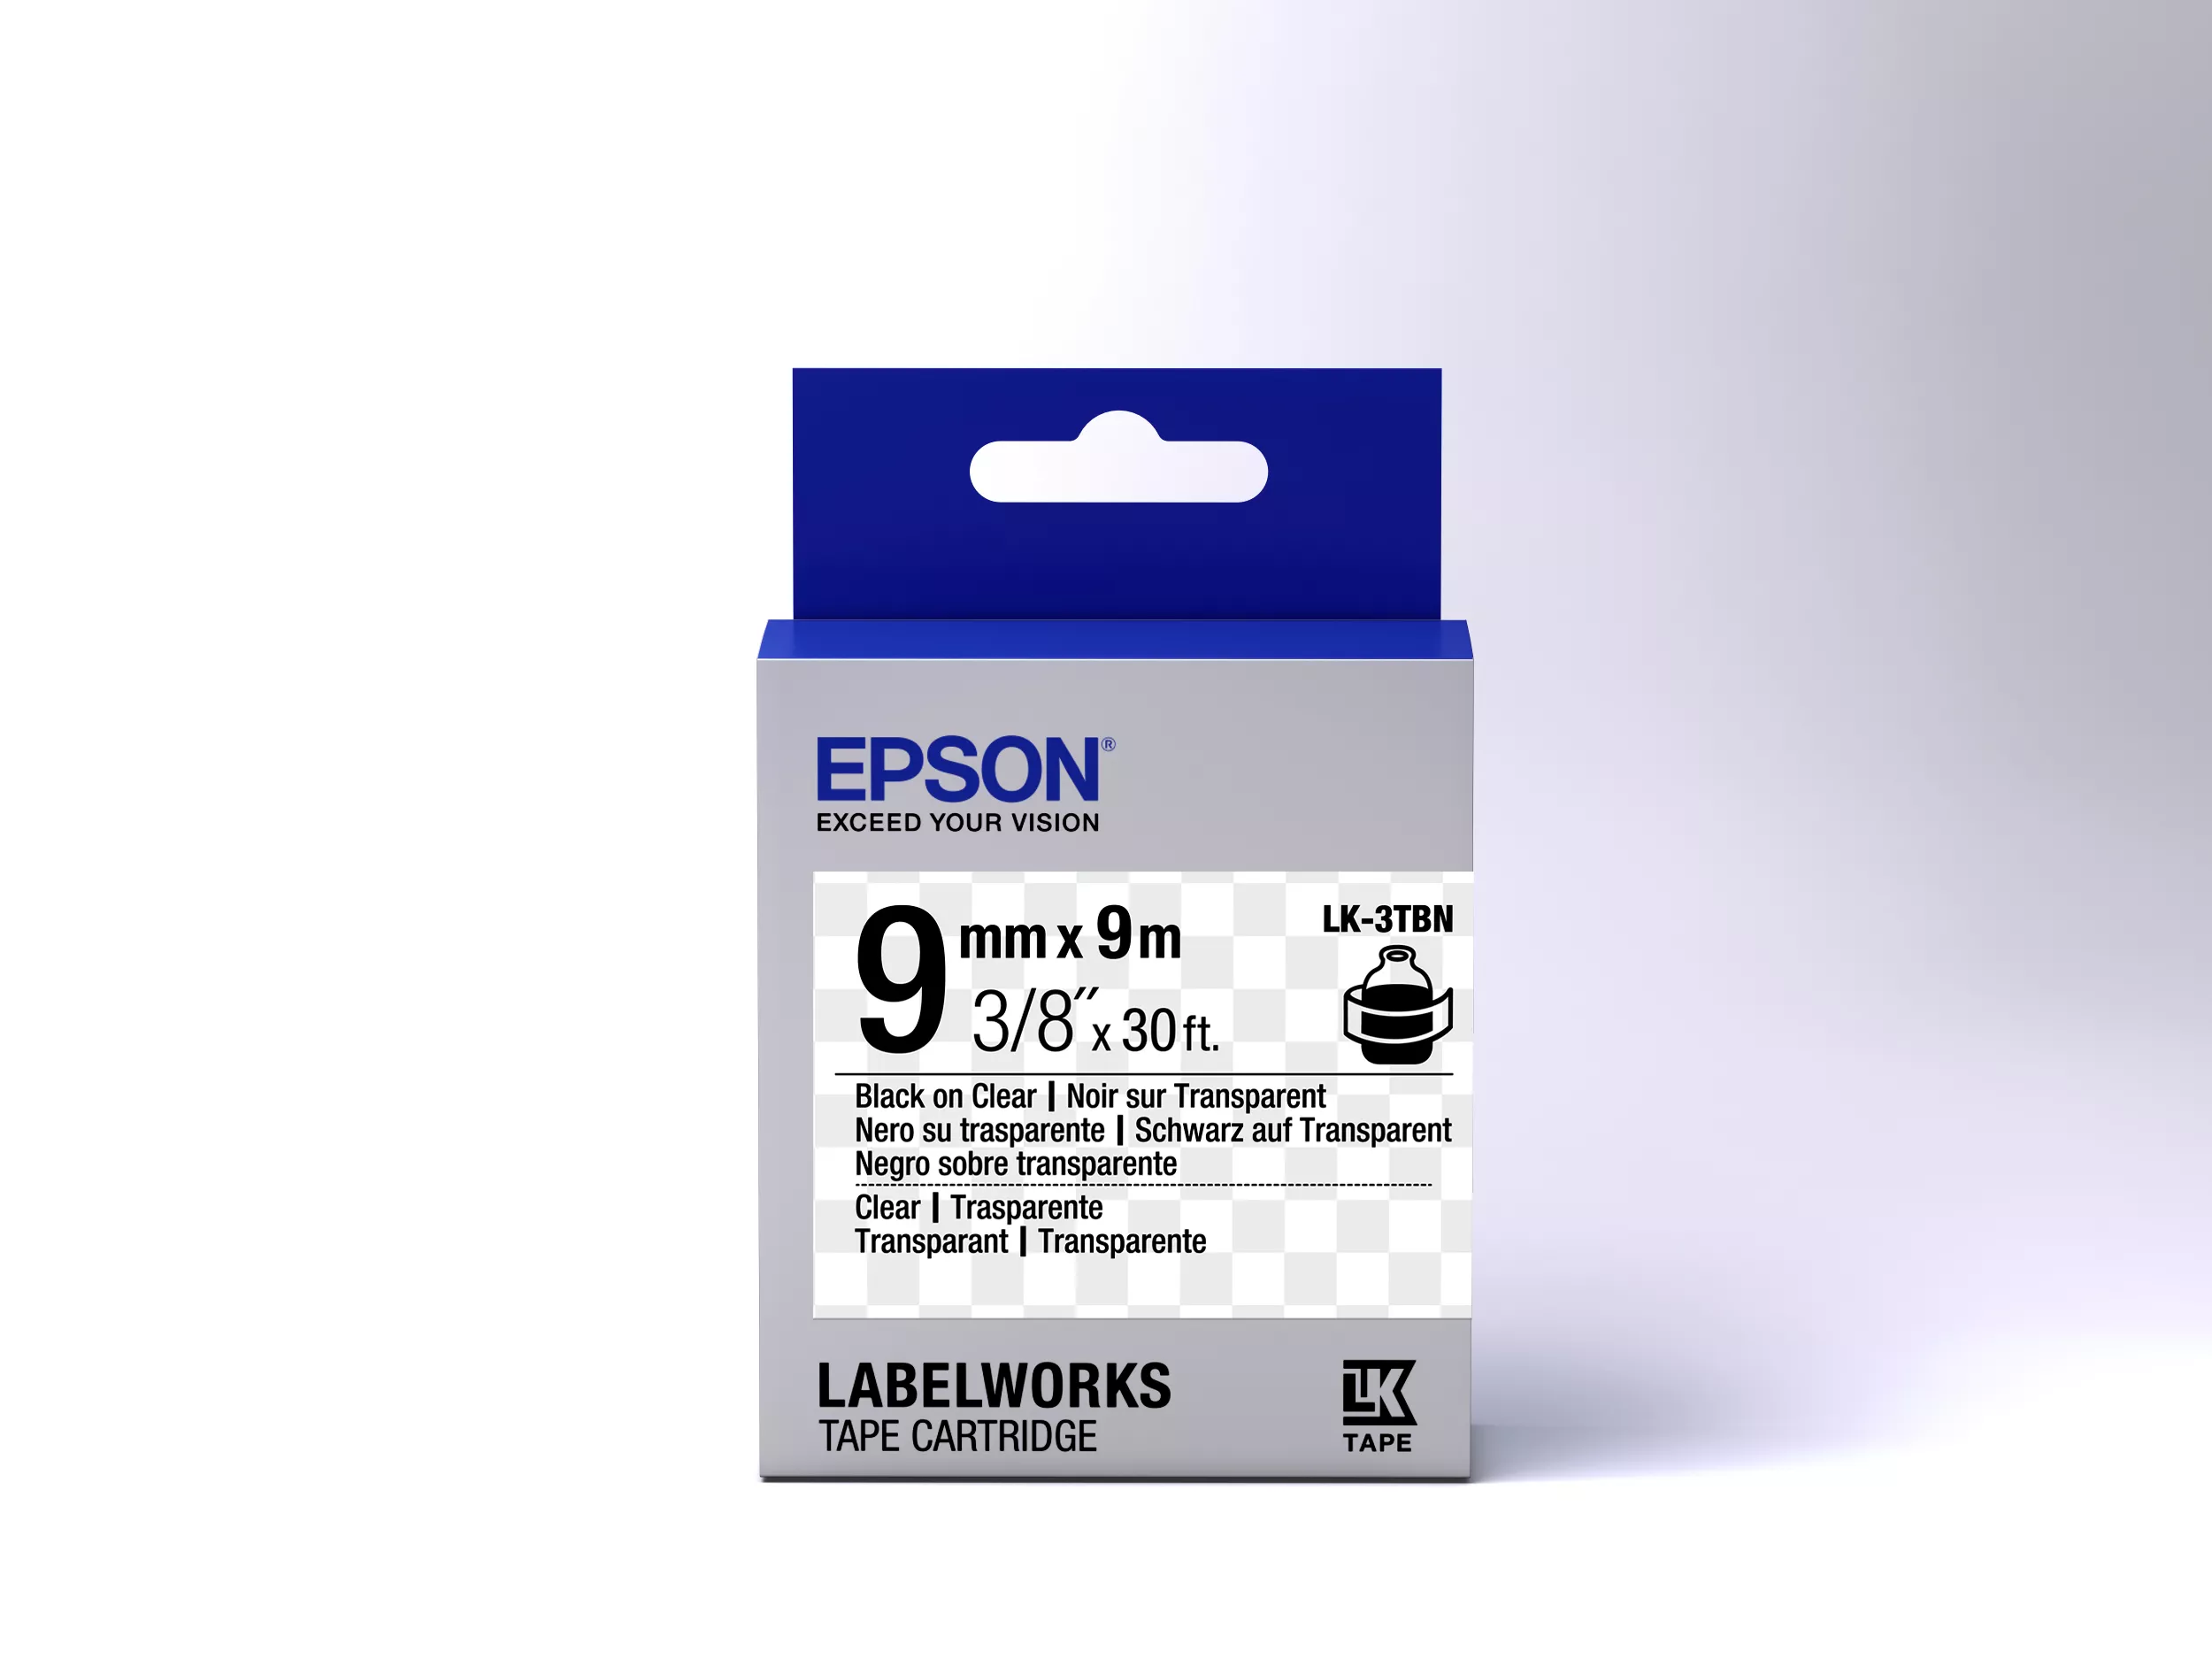 Vente Epson LK-3TBN - Transparent - Noir sur Transparent Epson au meilleur prix - visuel 2